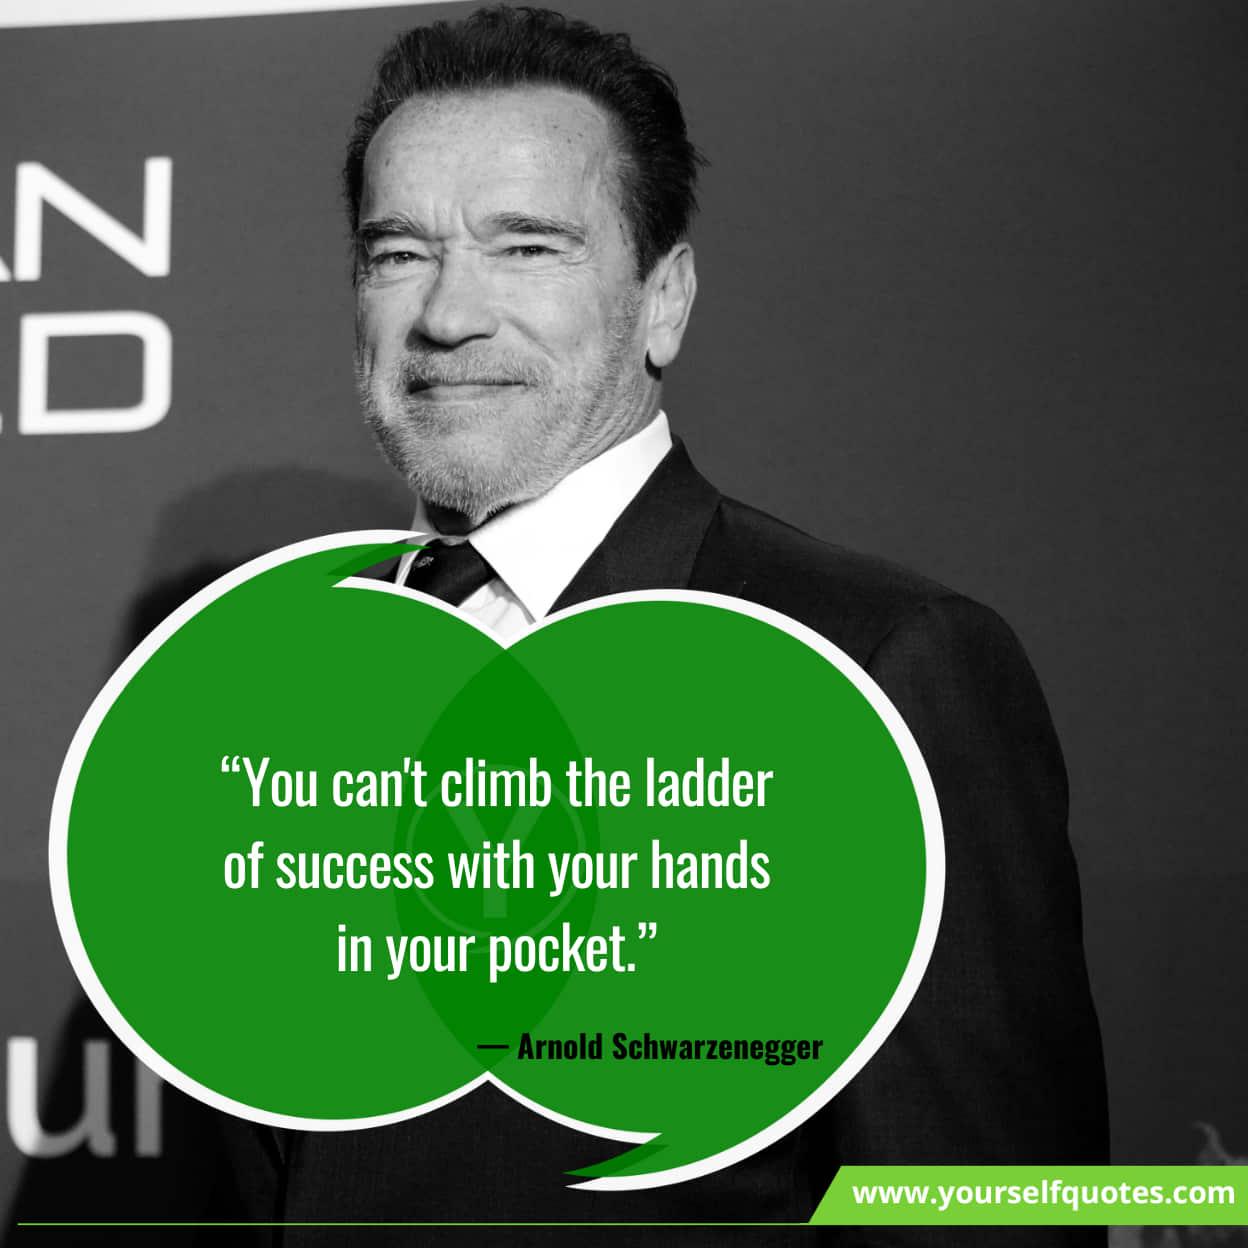 Best Arnold Schwarzenegger Quotes